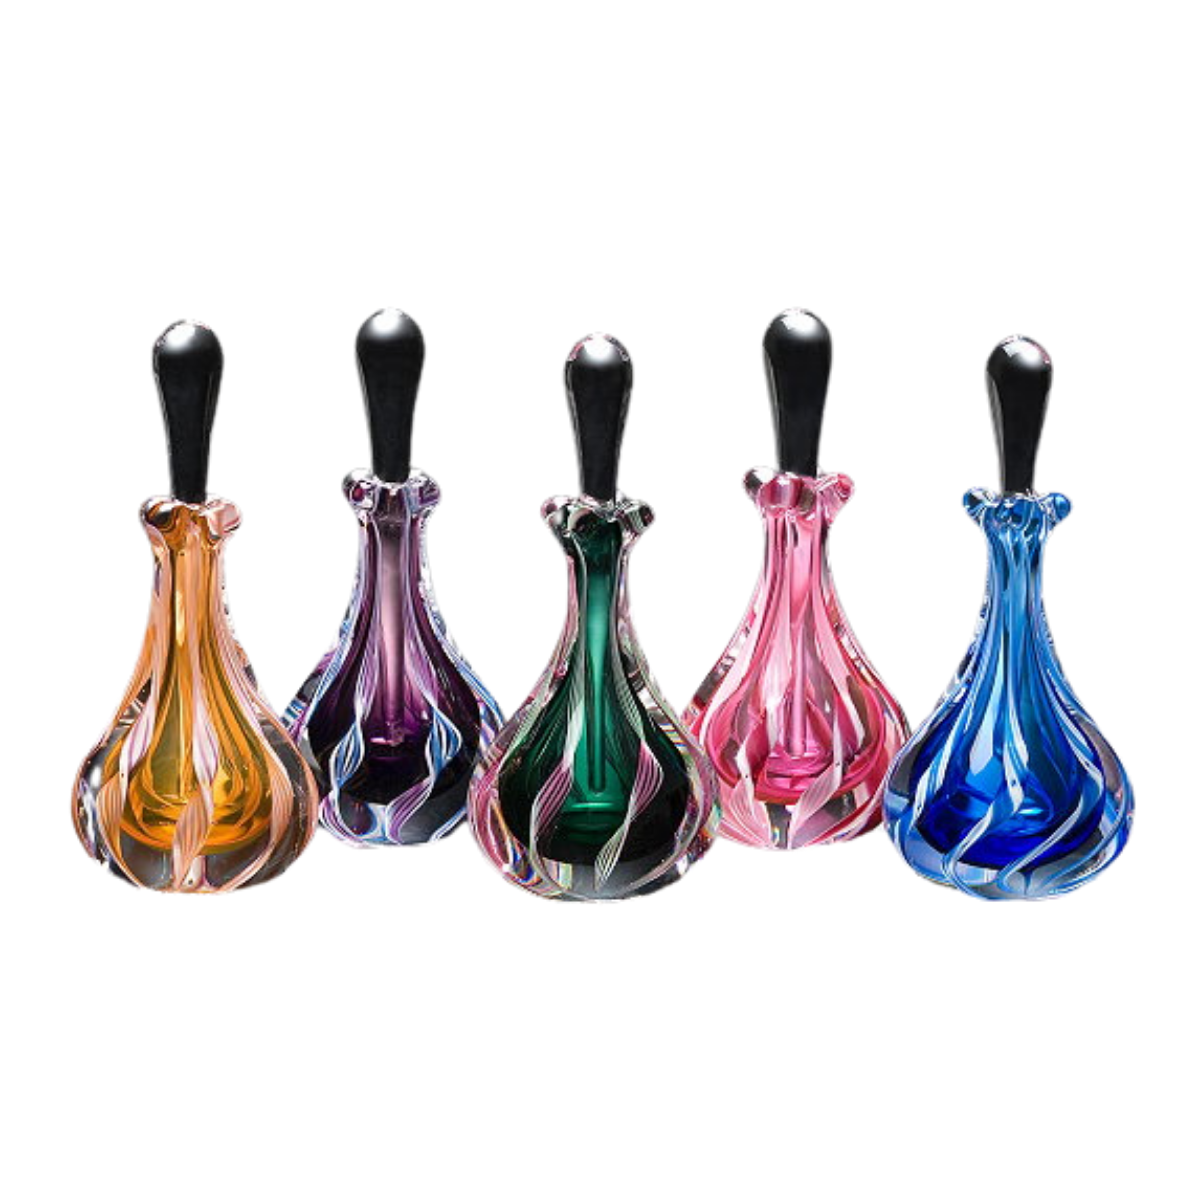 bottle of perfume design